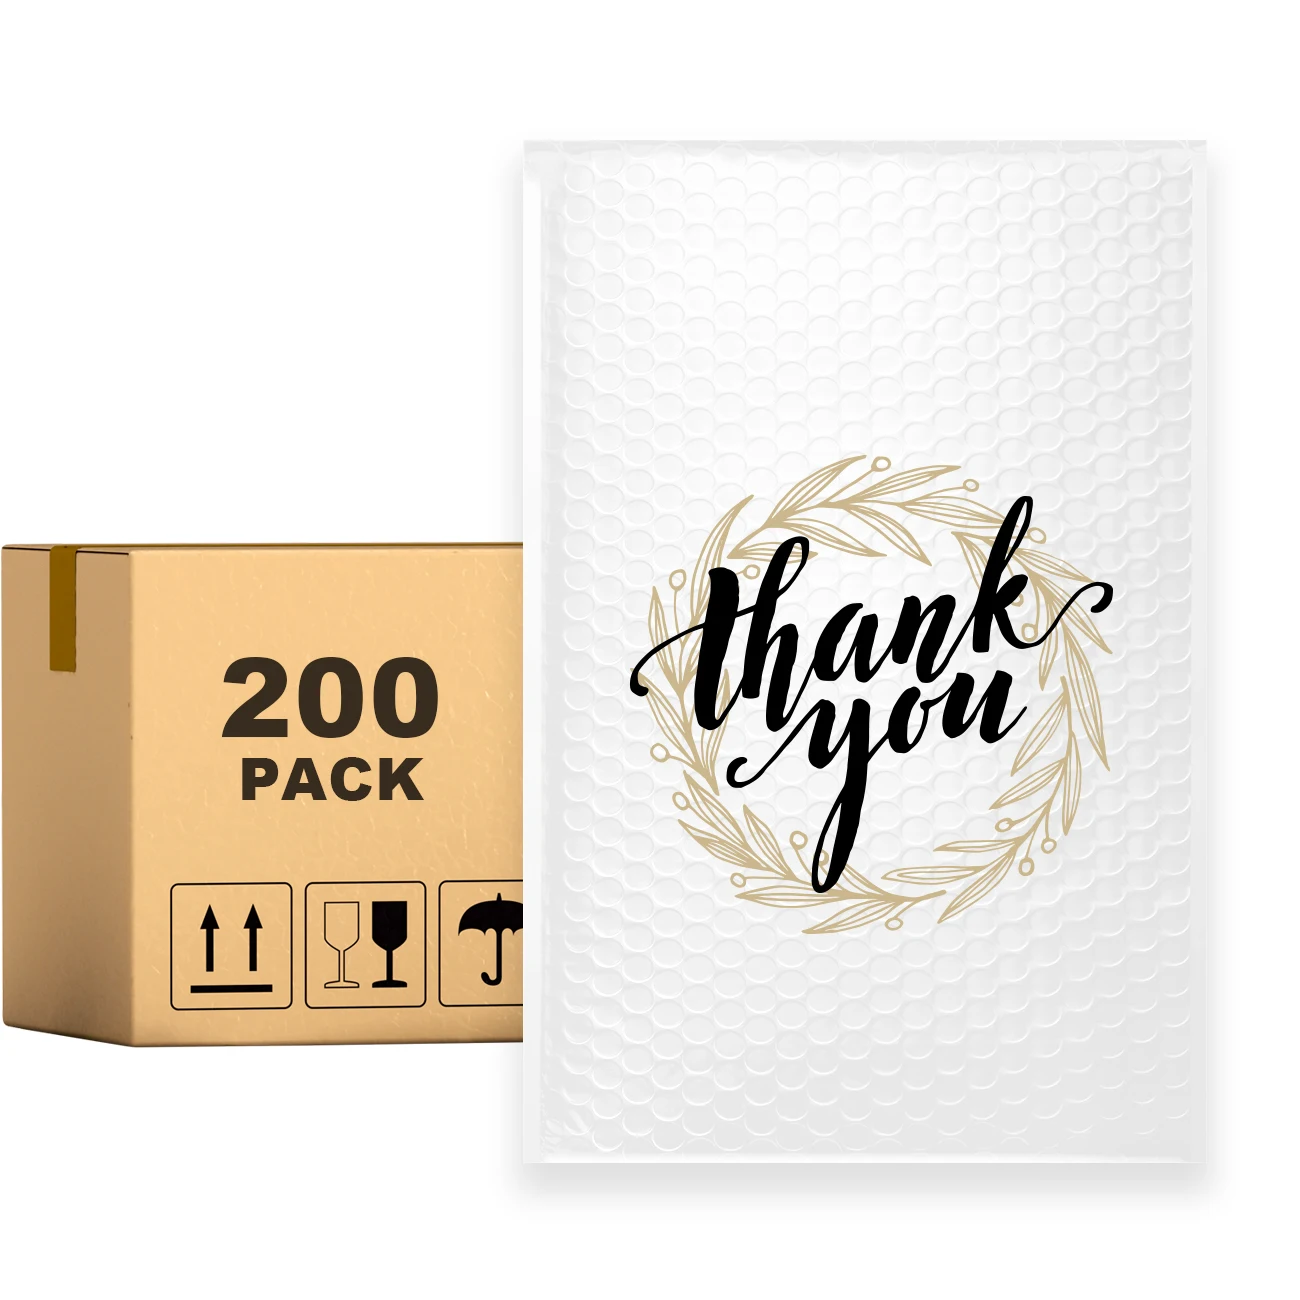 

Конверт для отправки посылки PACKAPRO, 7x10 дюймов, спасибо, белый, с пузырьками, самоуплотняющийся, с вкладышами, 200 шт., для доставки/упаковки